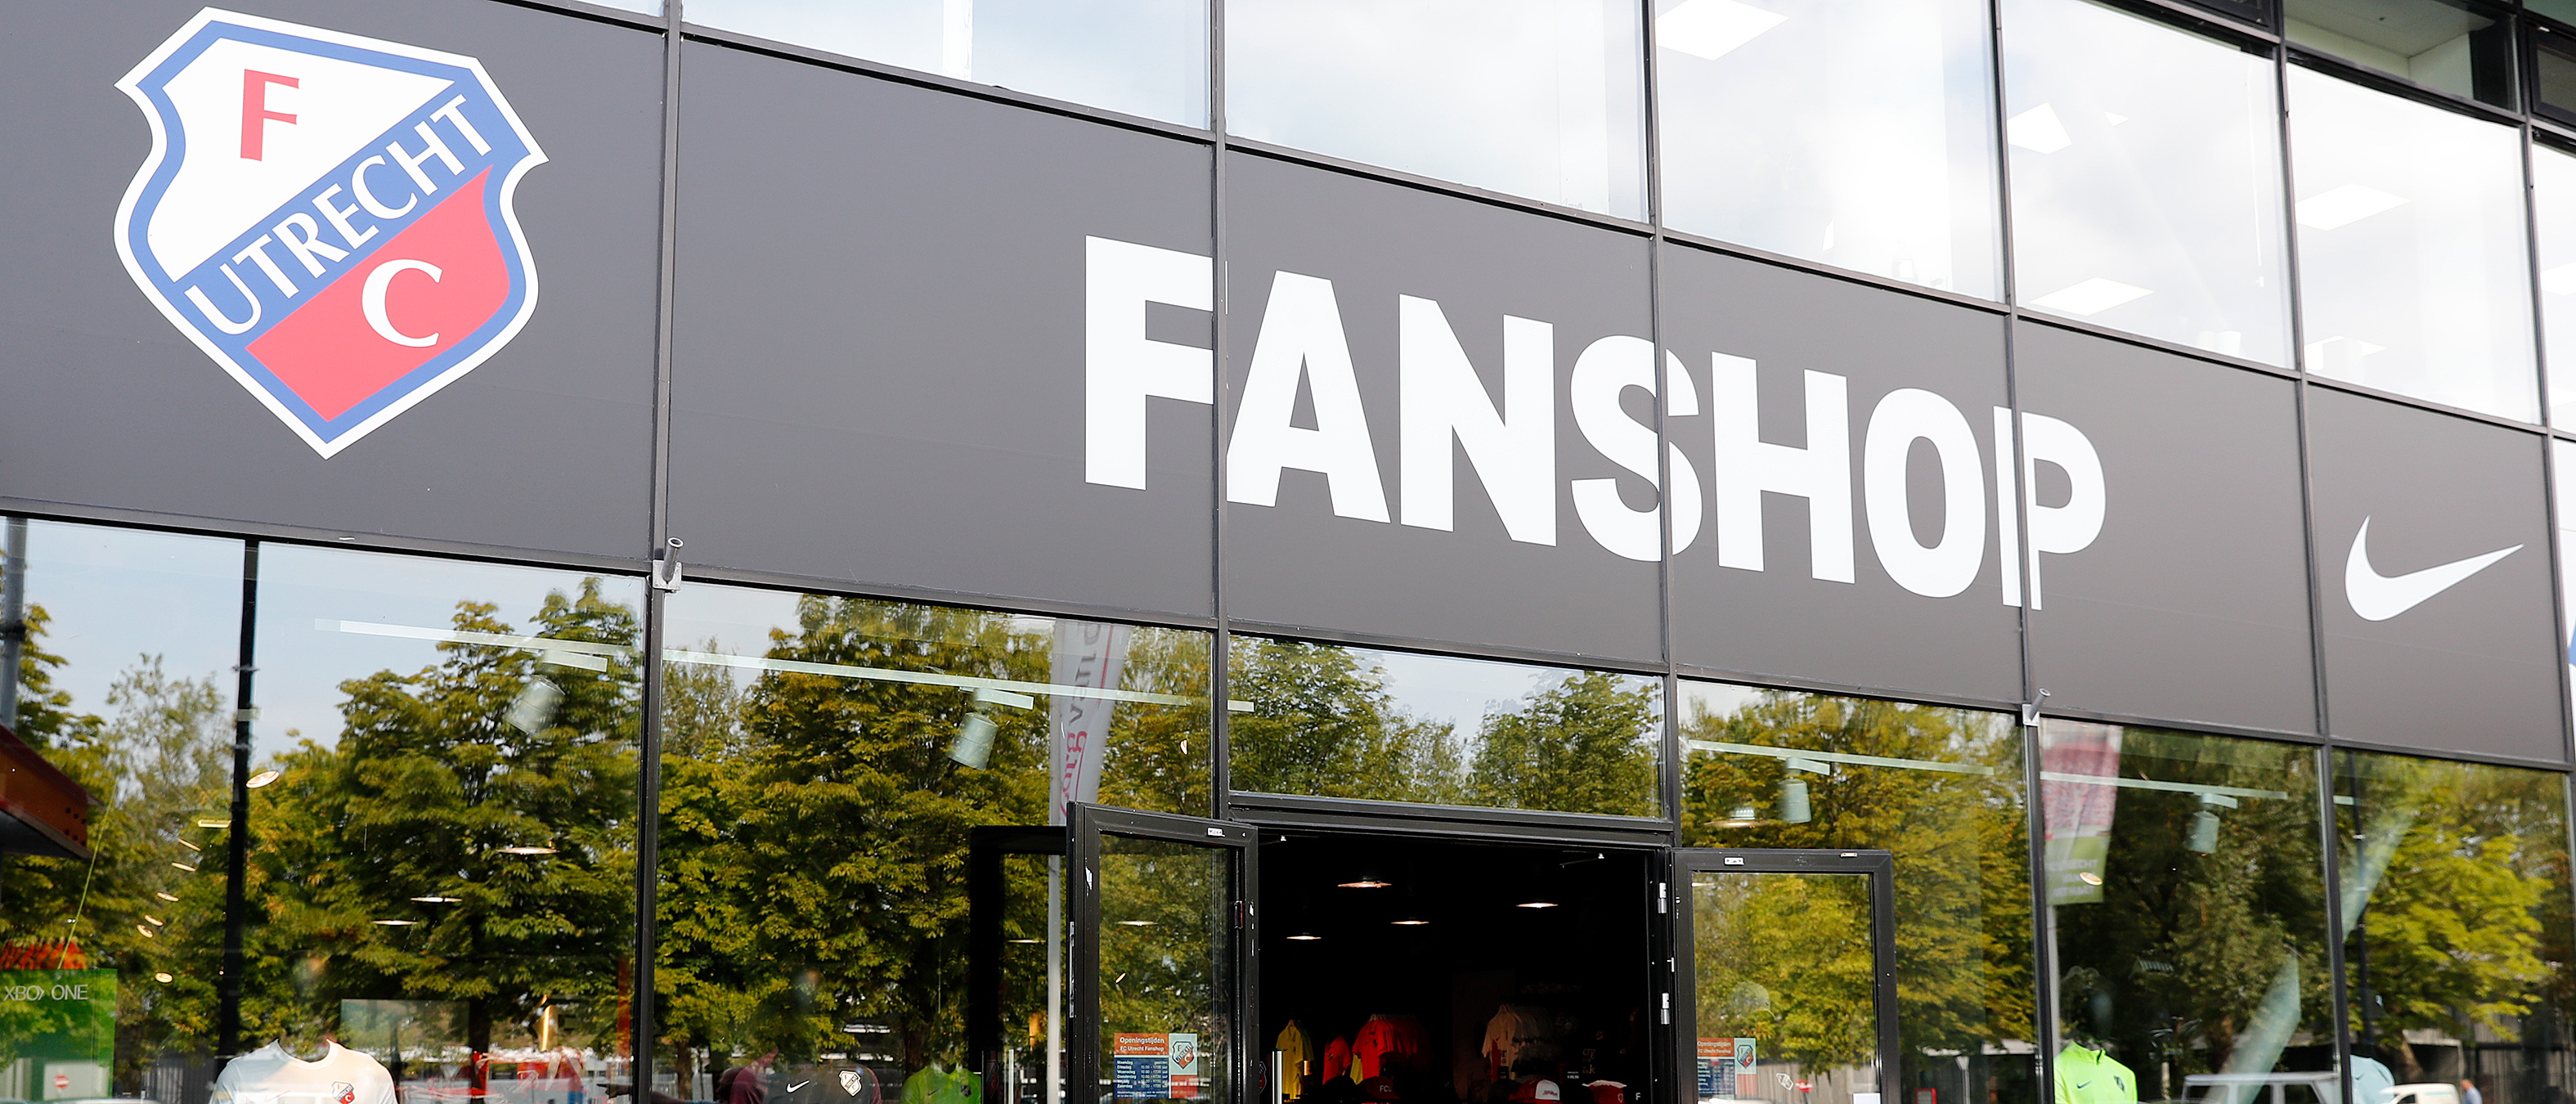 FC Utrecht Fanshop vanaf woensdag 6 mei weer open